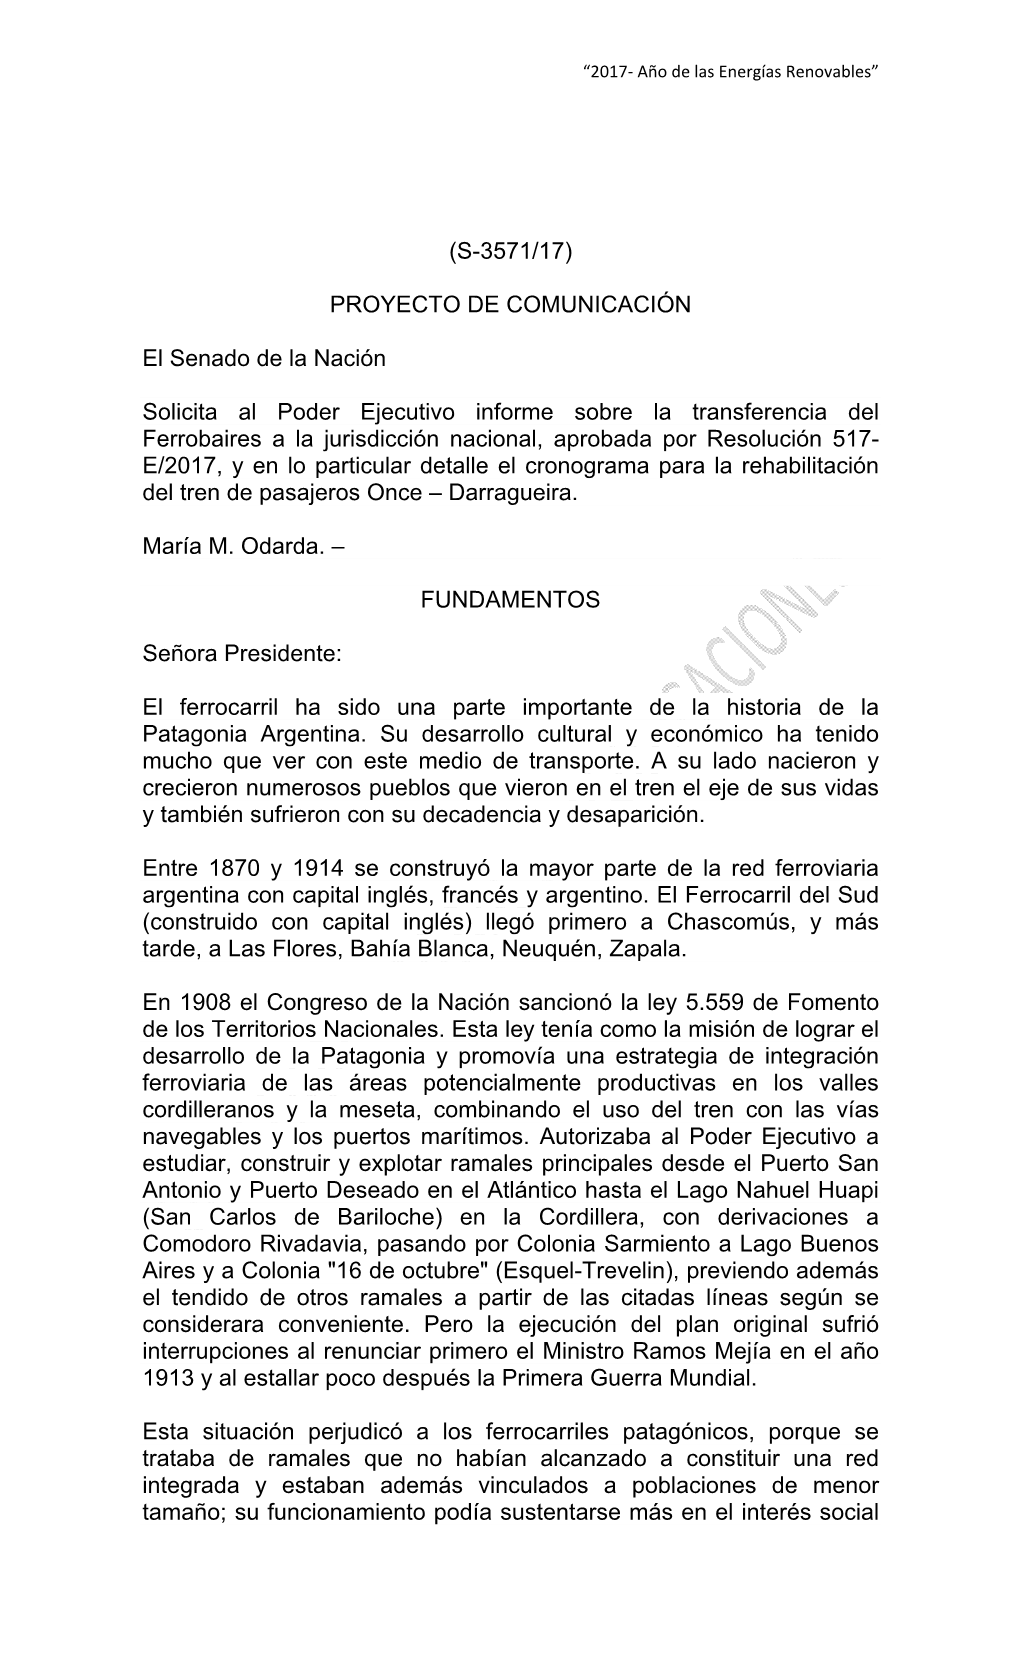 (S-3571/17) PROYECTO DE COMUNICACIÓN El Senado De La